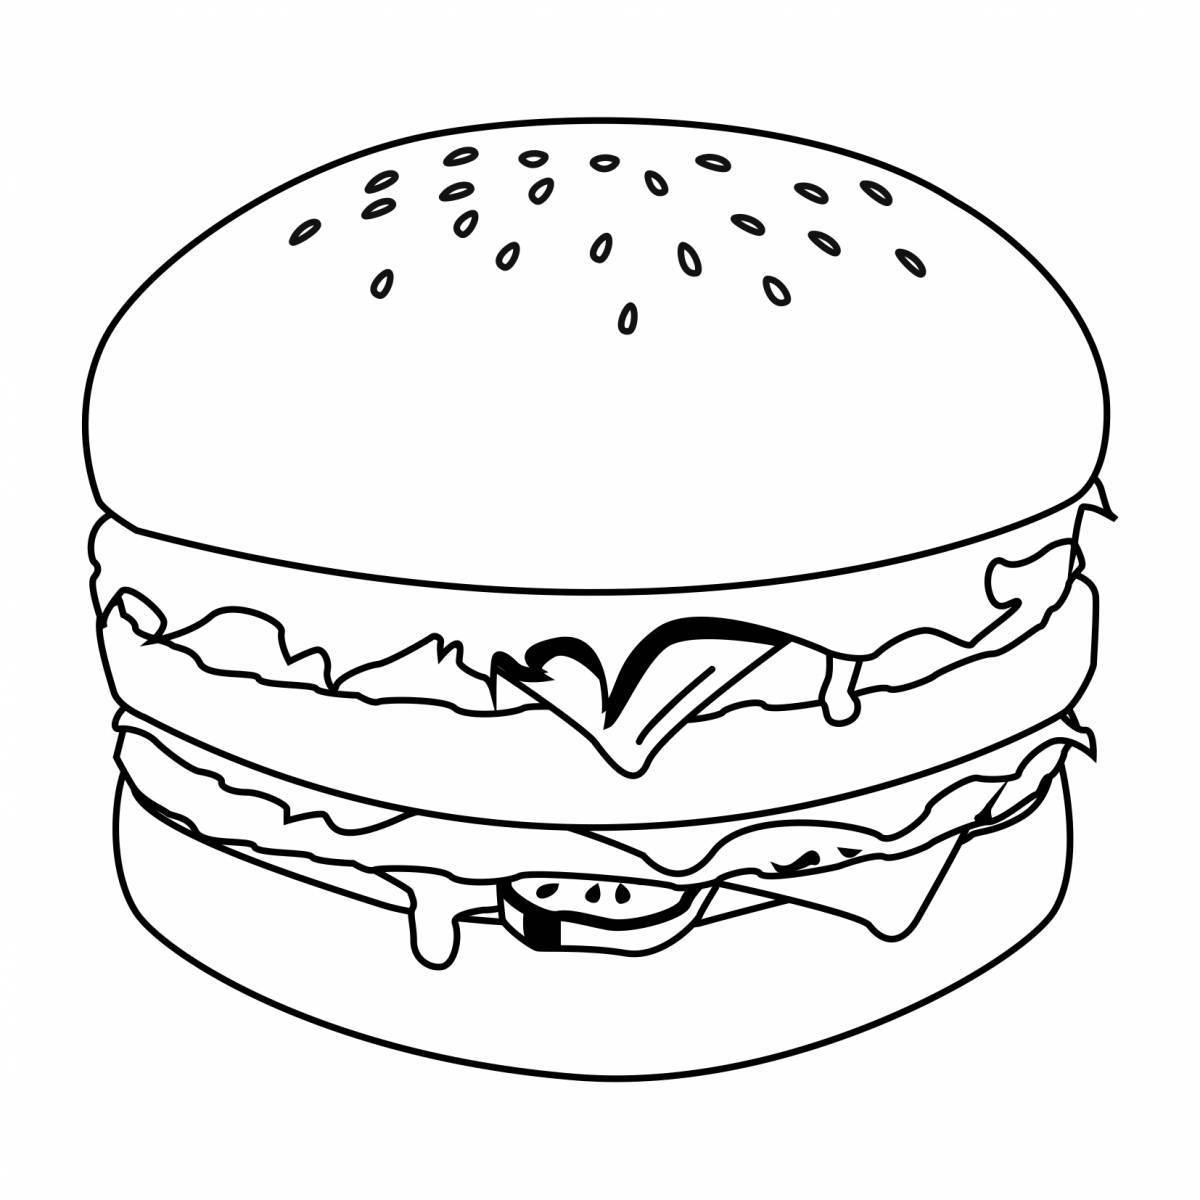 Colorful hamburger coloring page